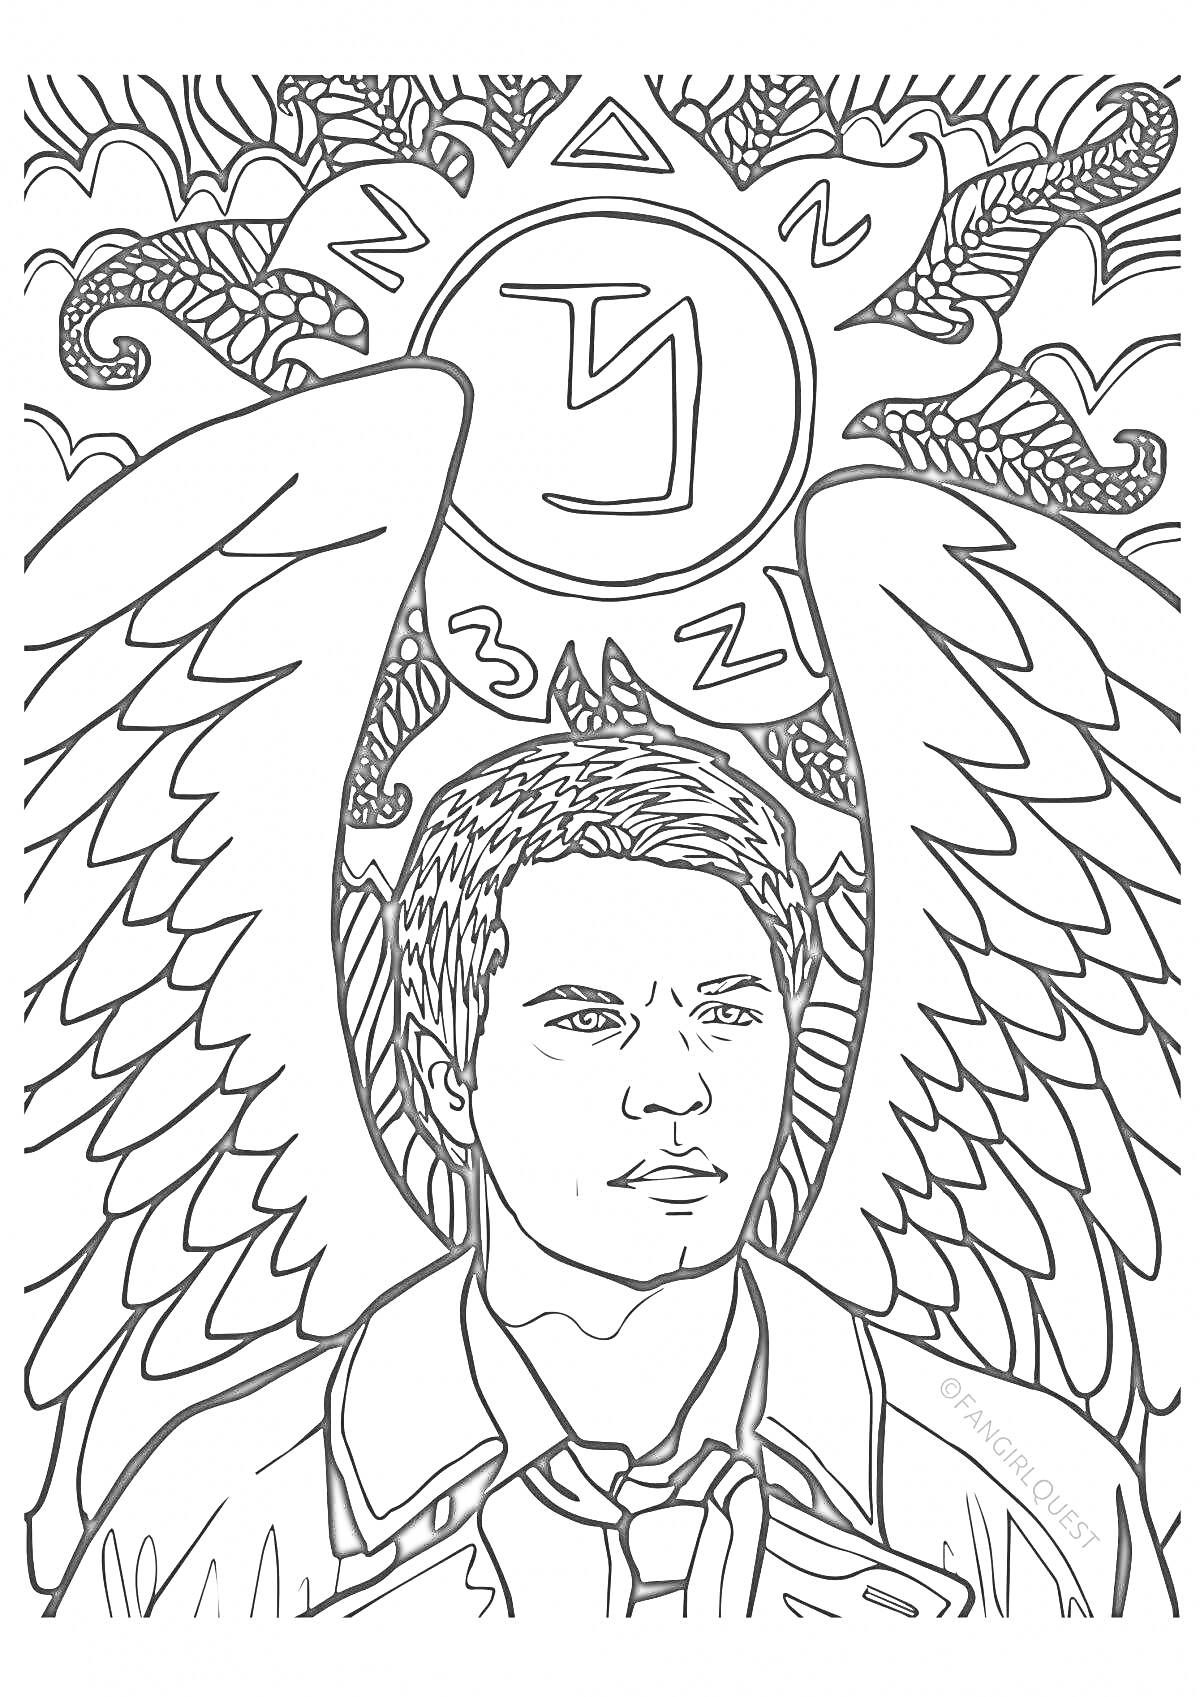 Раскраска Человек с крыльями и символом на фоне змей